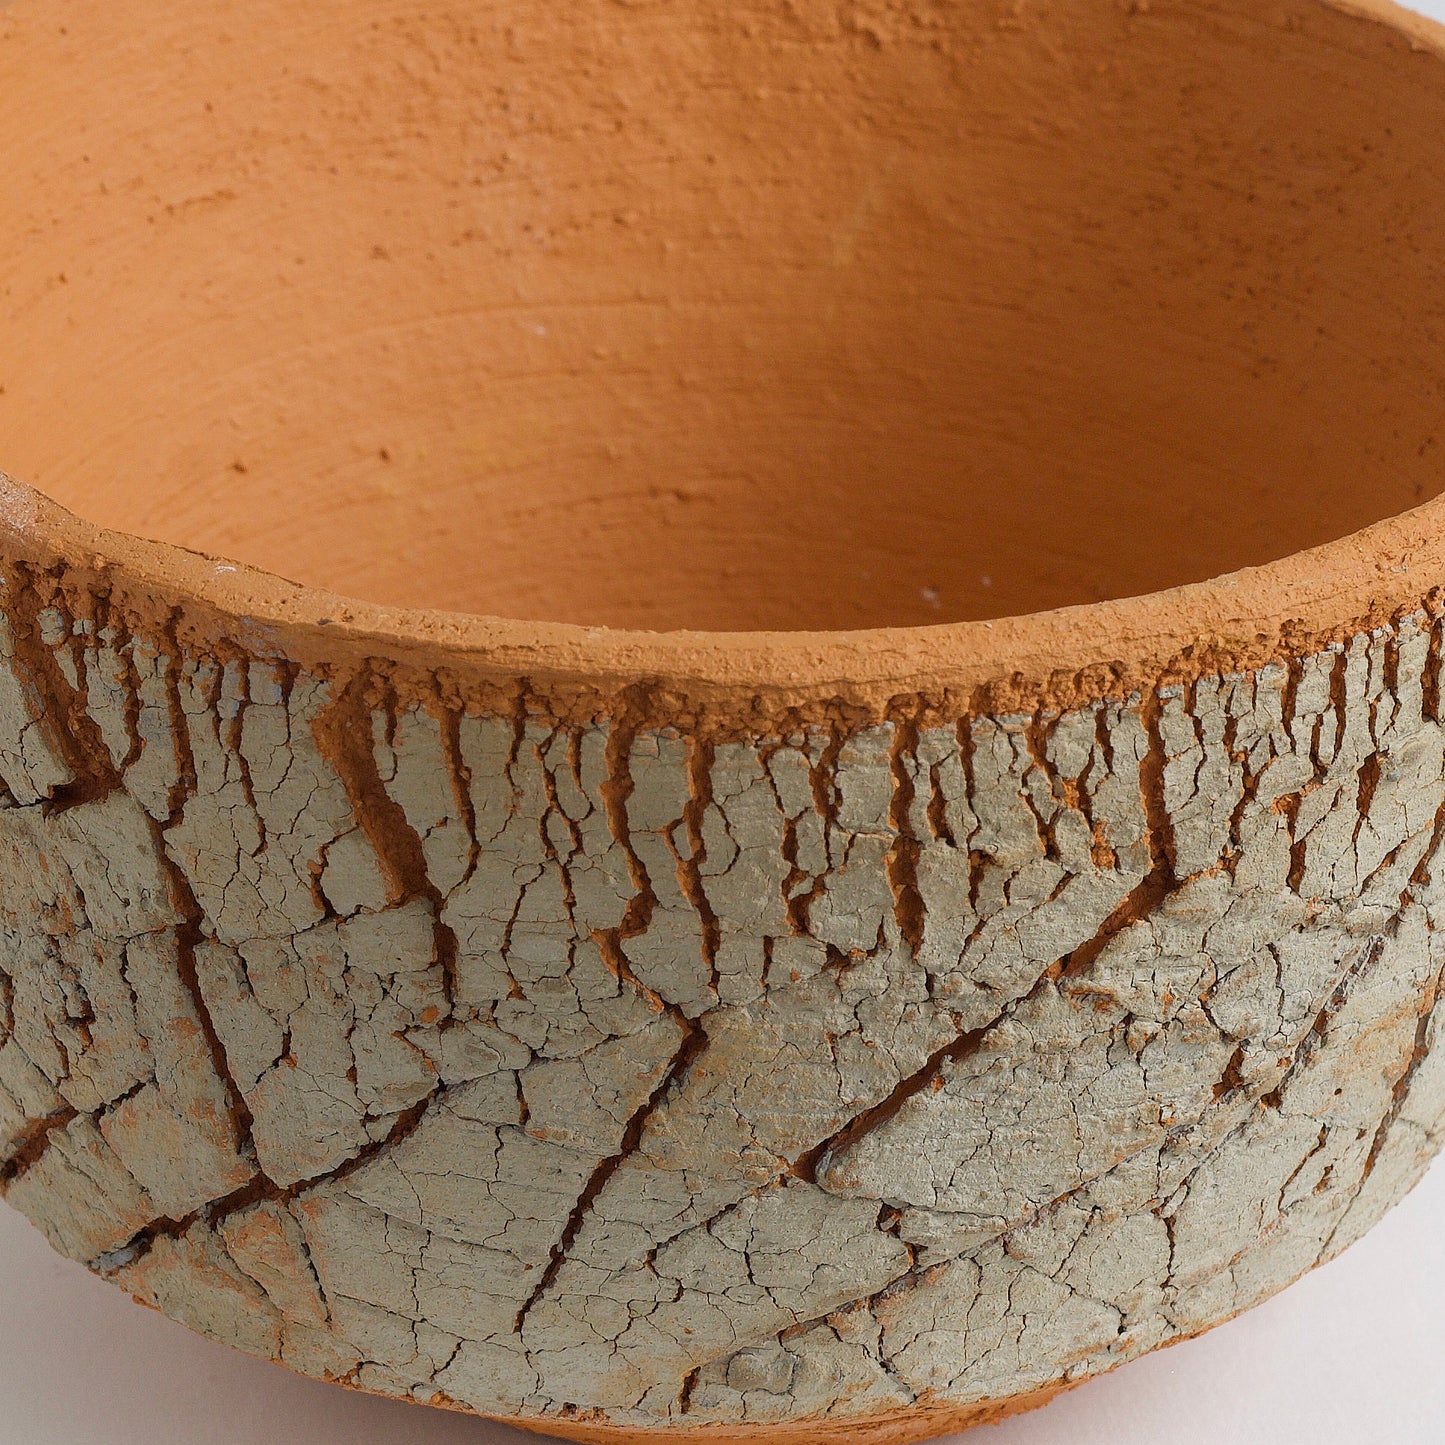 Japanese Arrakis Bowl Cracked Ceramic Orange Grey Dune